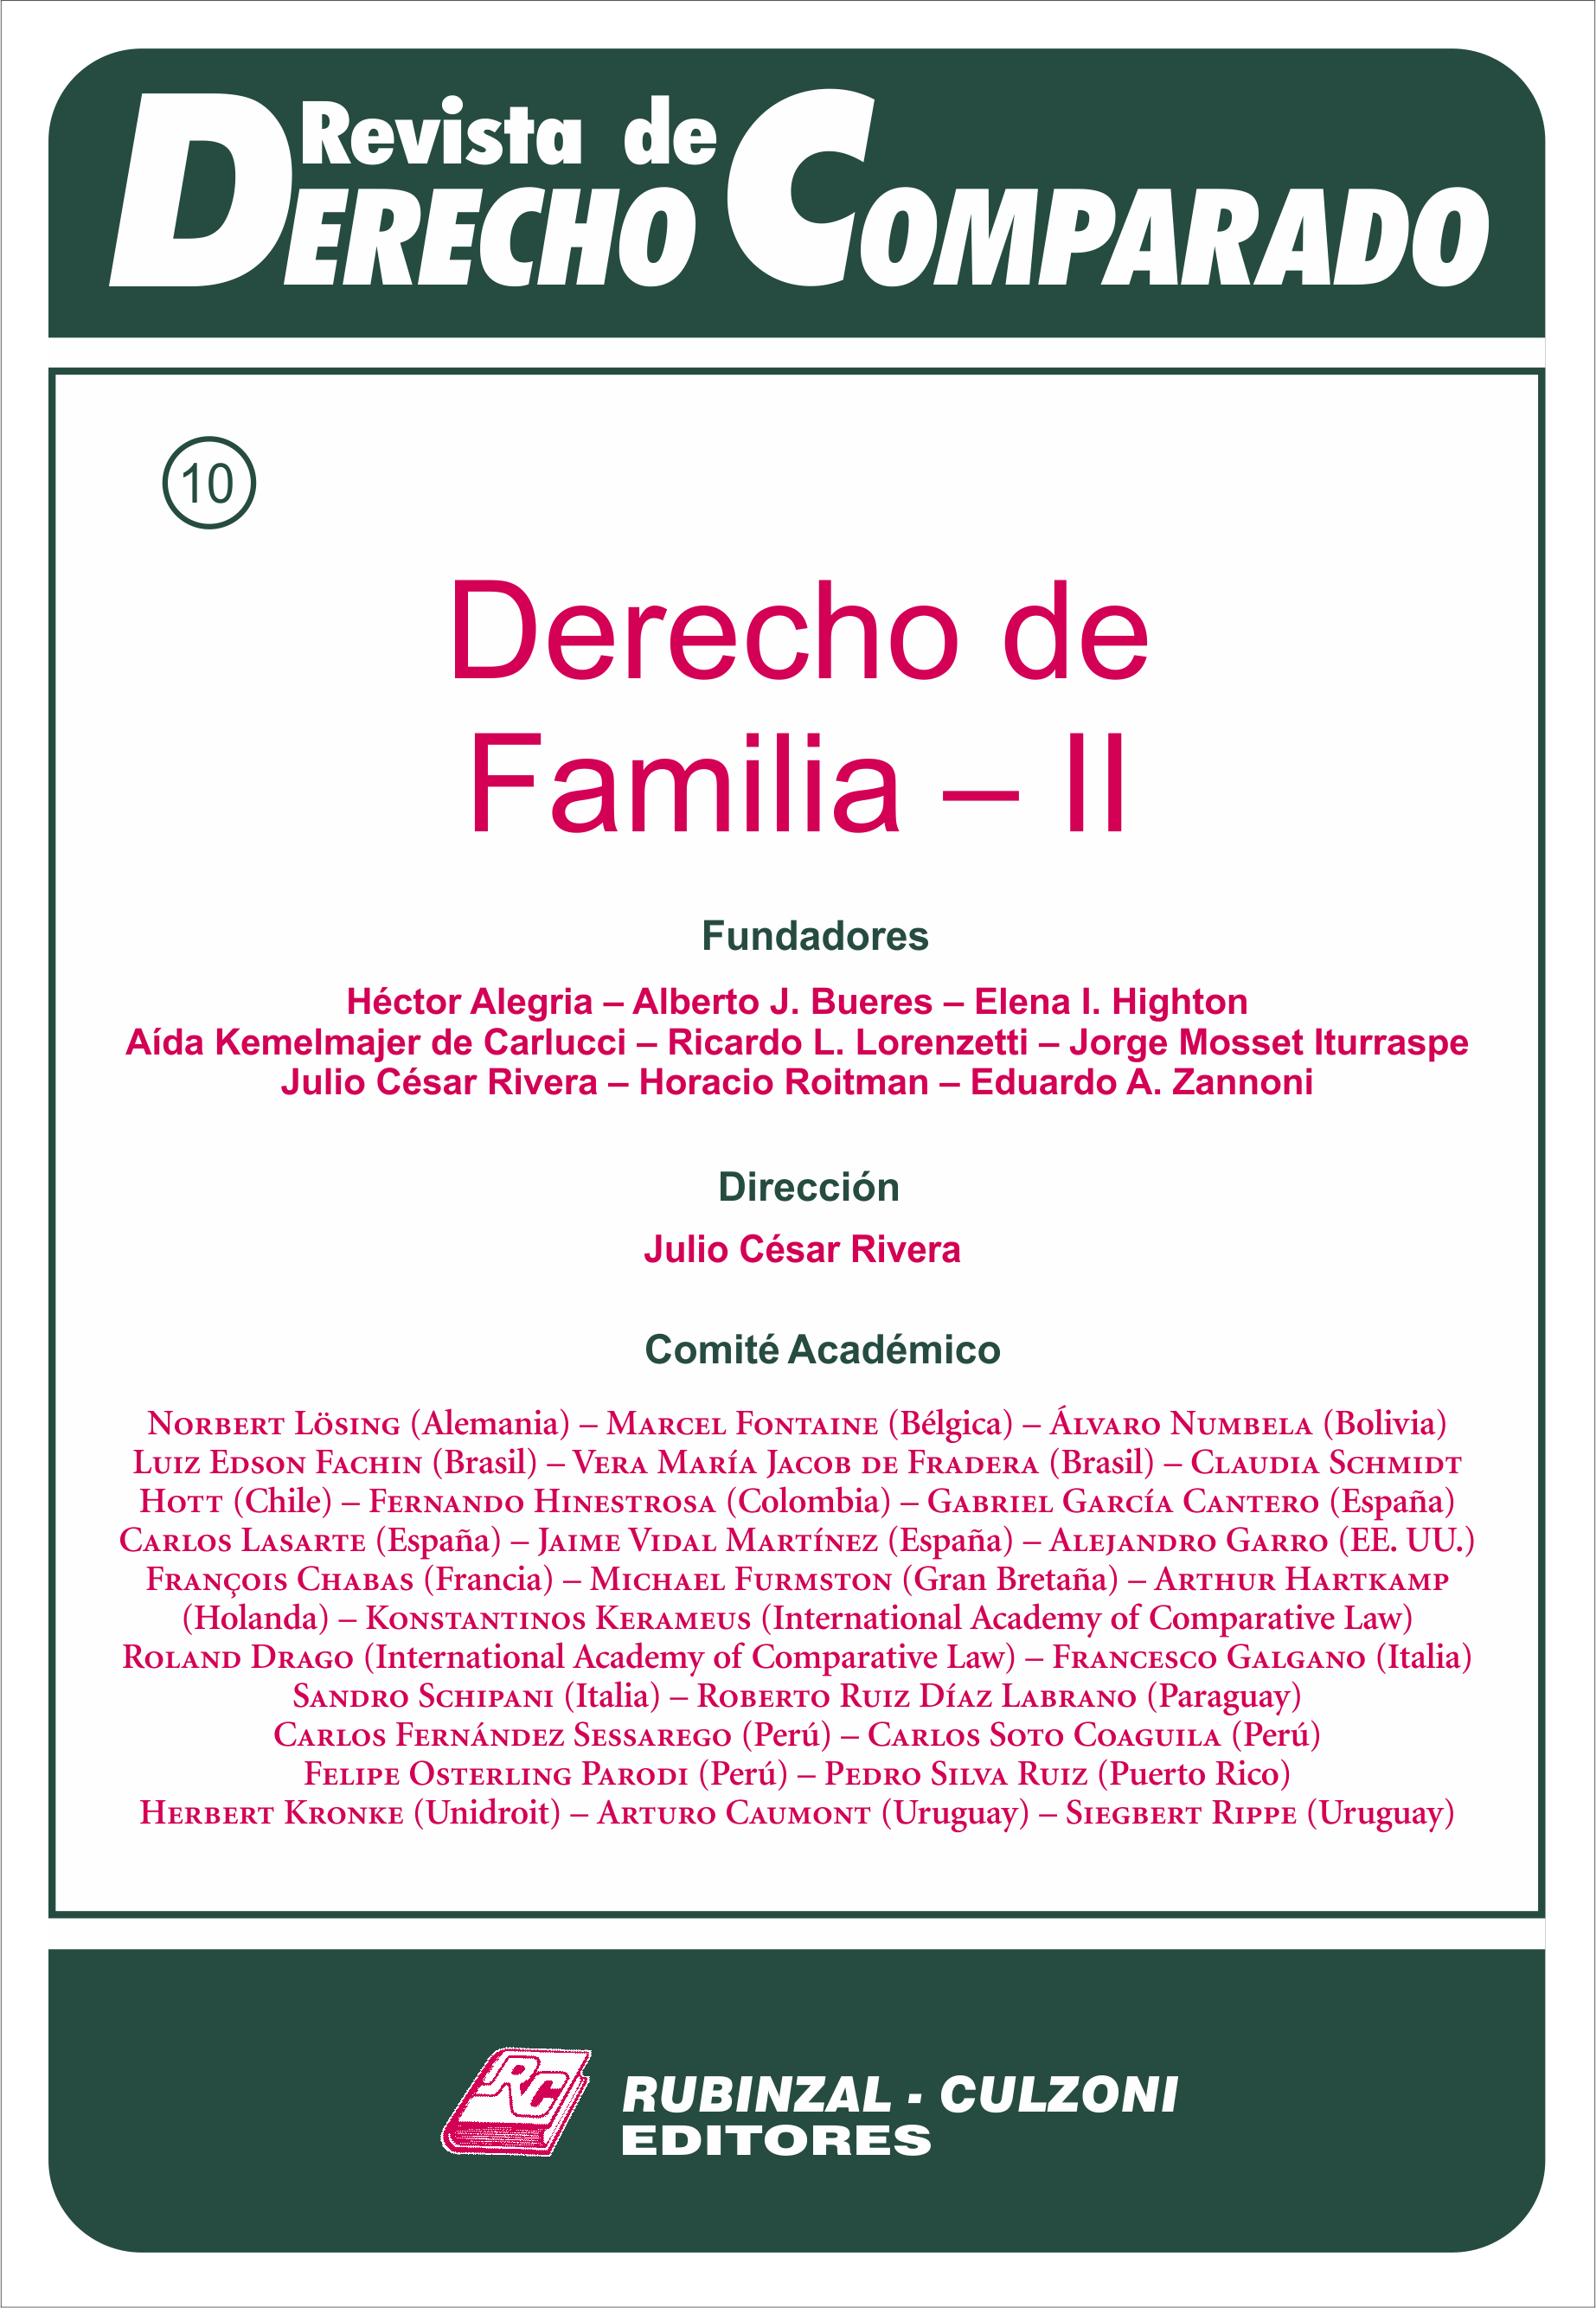 Revista de Derecho Comparado - Derecho de Familia - II.